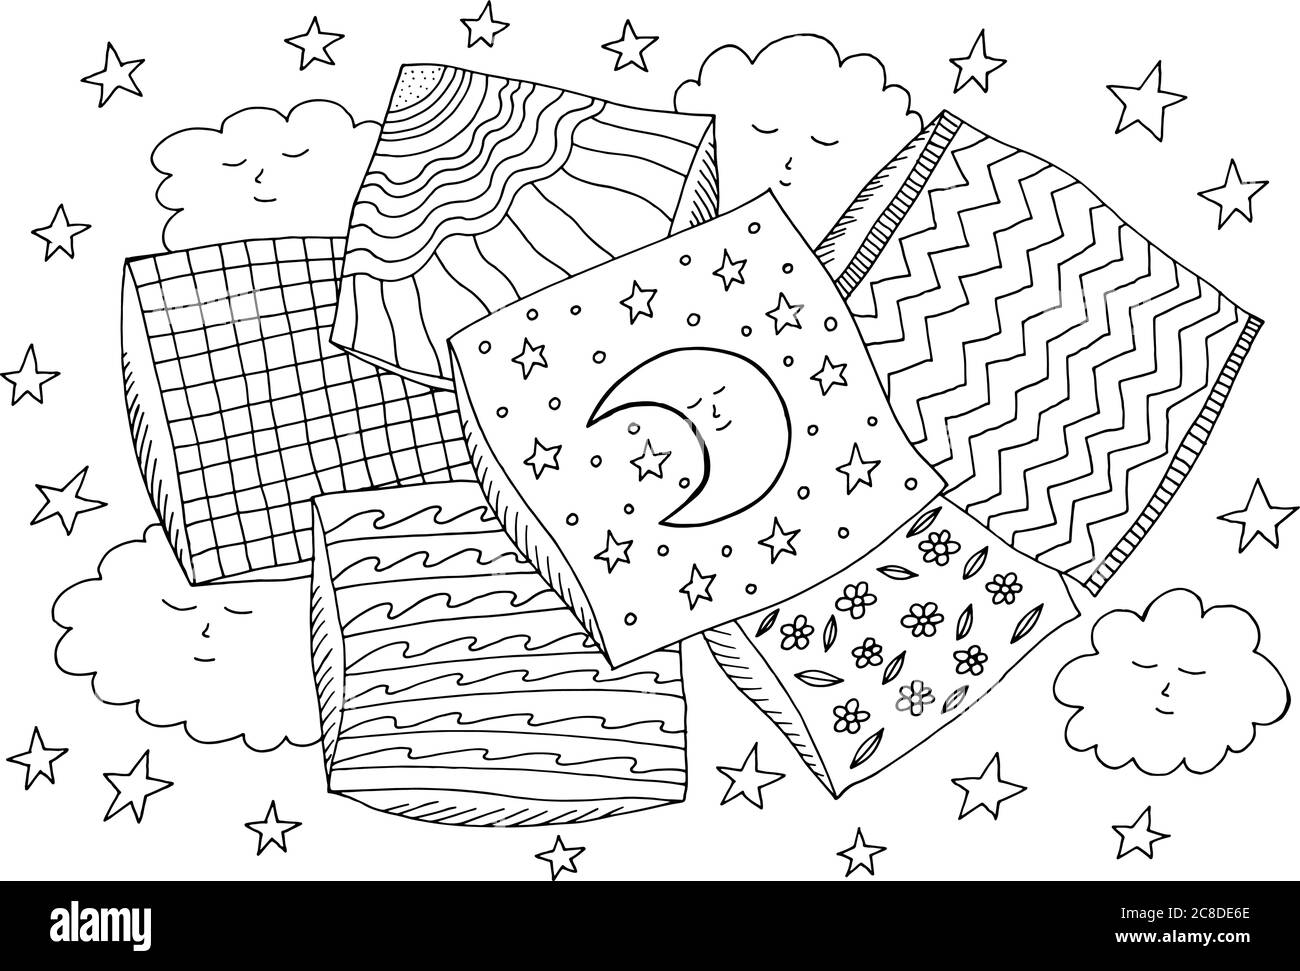 Mond schläft auf dem Kissen. Gemütliche Malseite für Erwachsene. Doodle Cartoon Fantasy Zeichnung. Linienzeichnung. Vektorgrafik. Stock Vektor